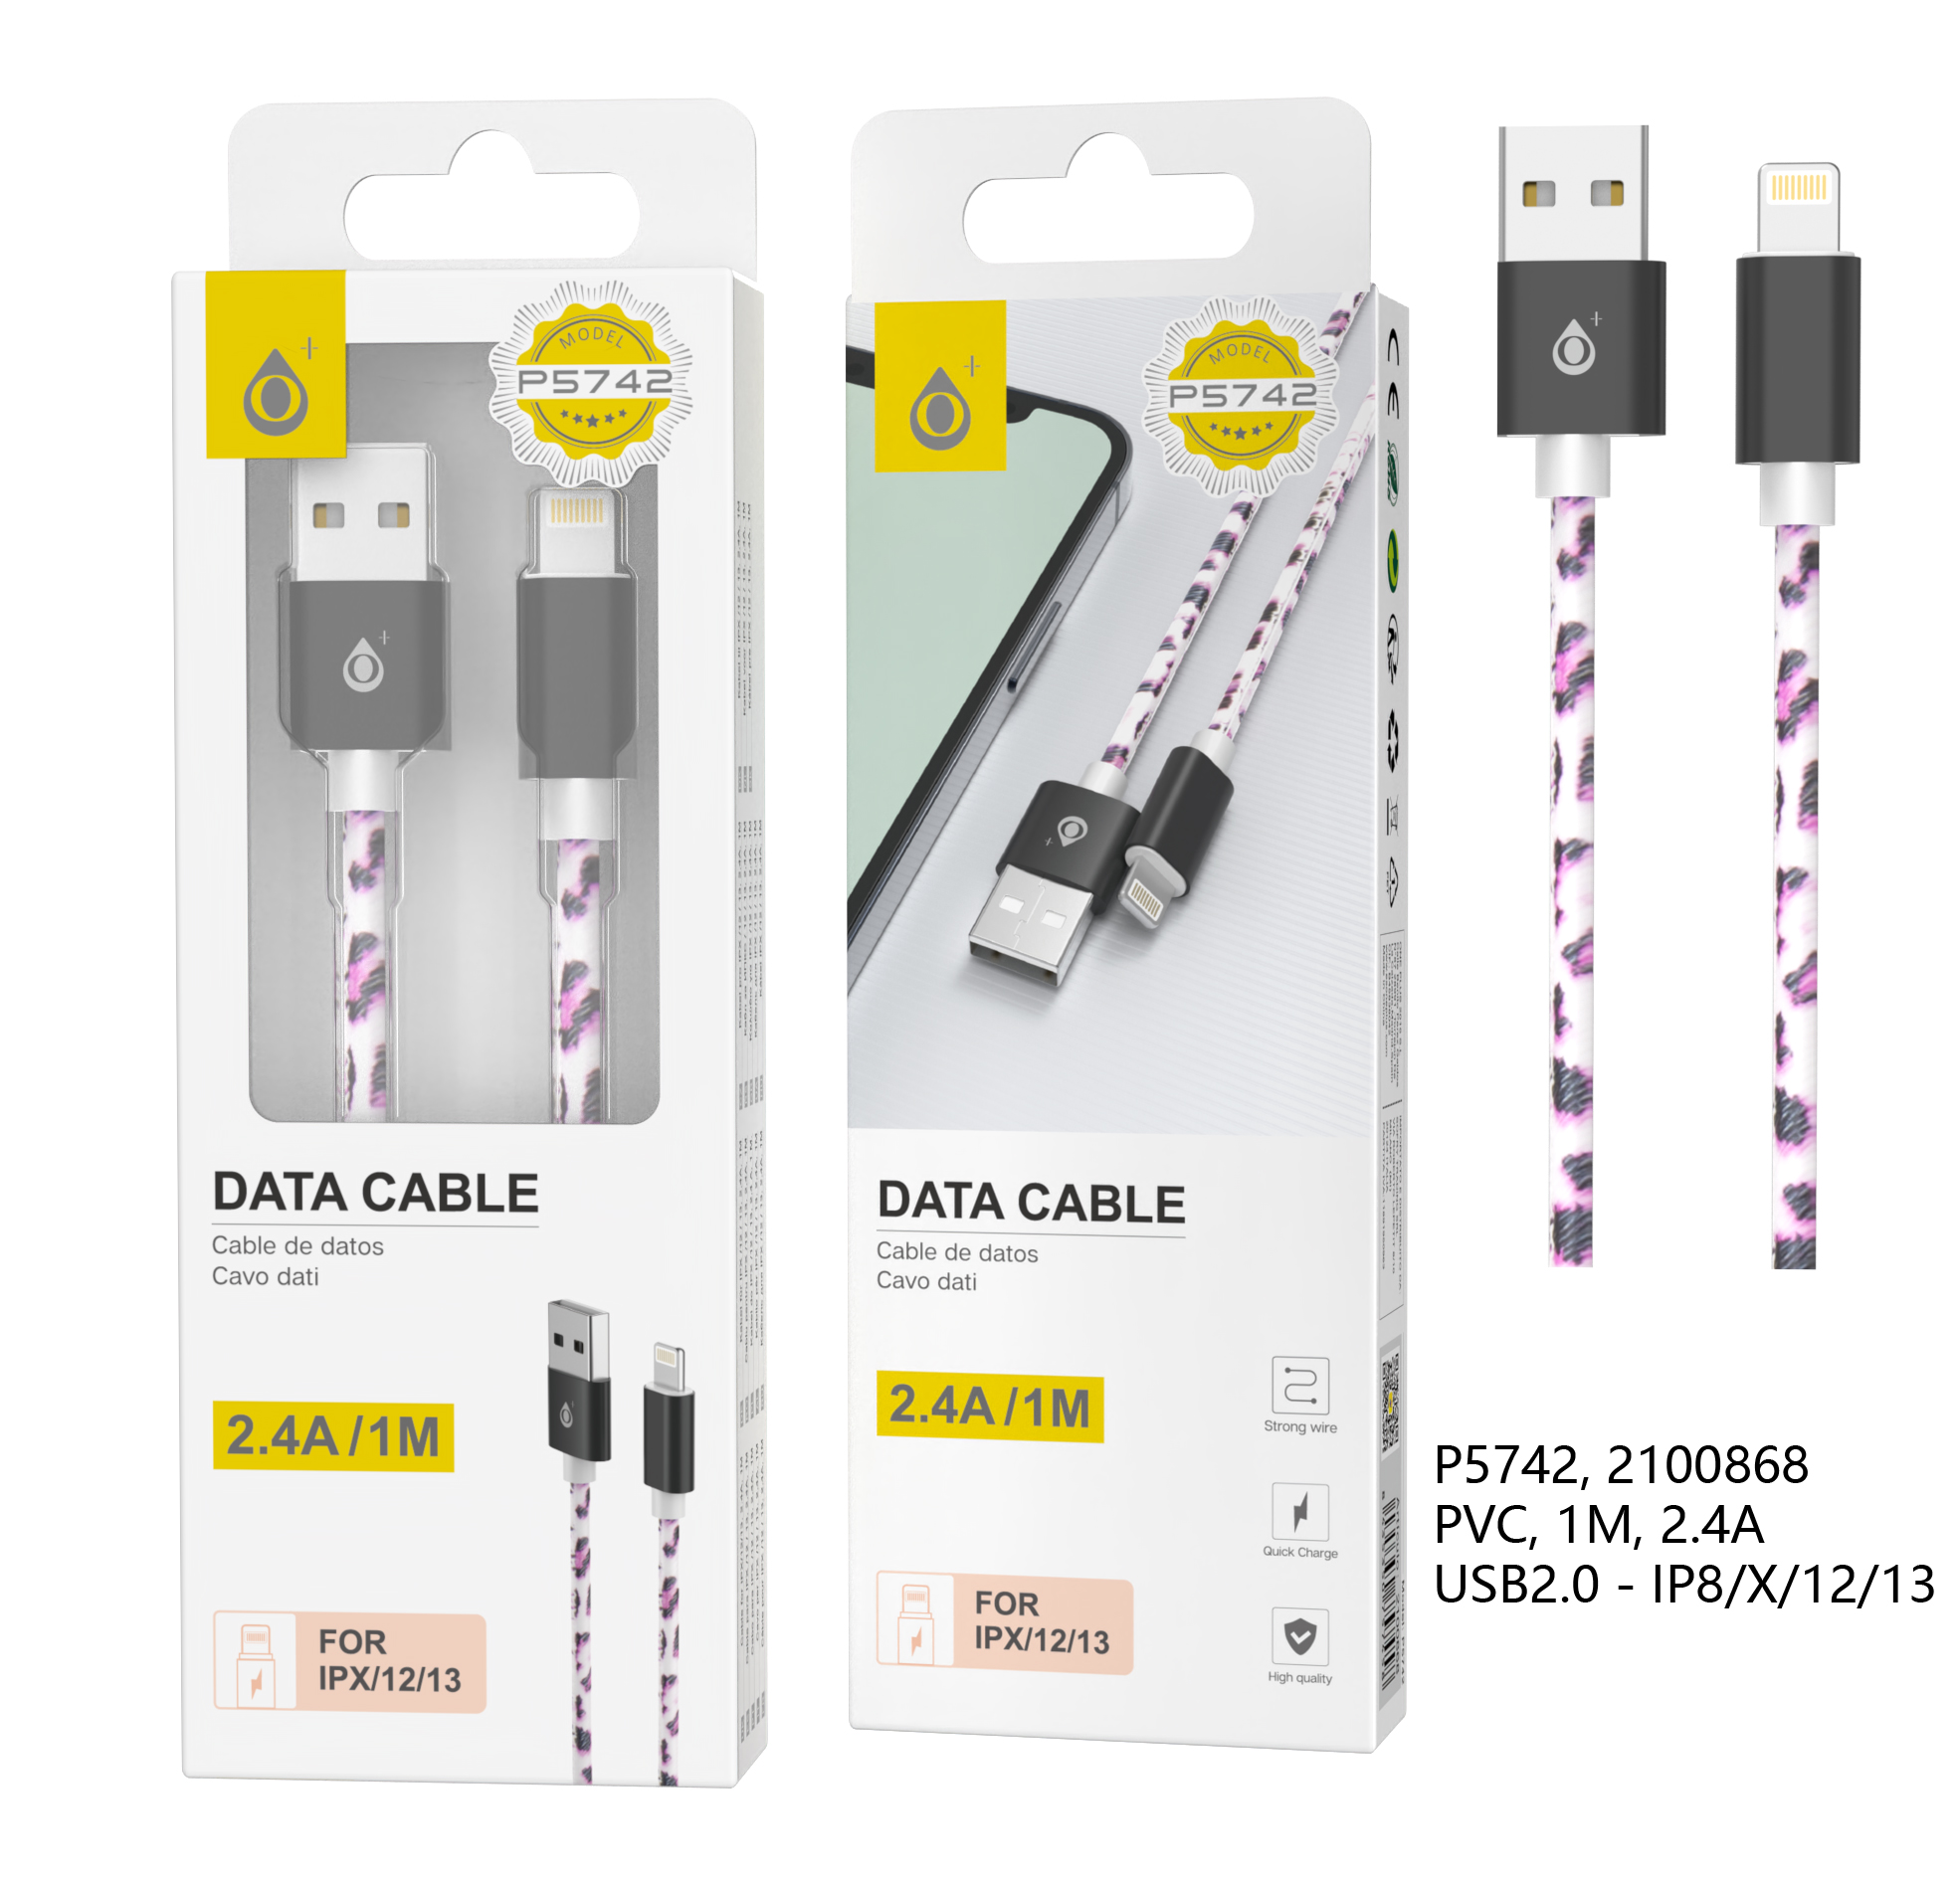 P5742 Cable de Datos Rainbow Para Iphone X/11/12/13, 2.4A/1M